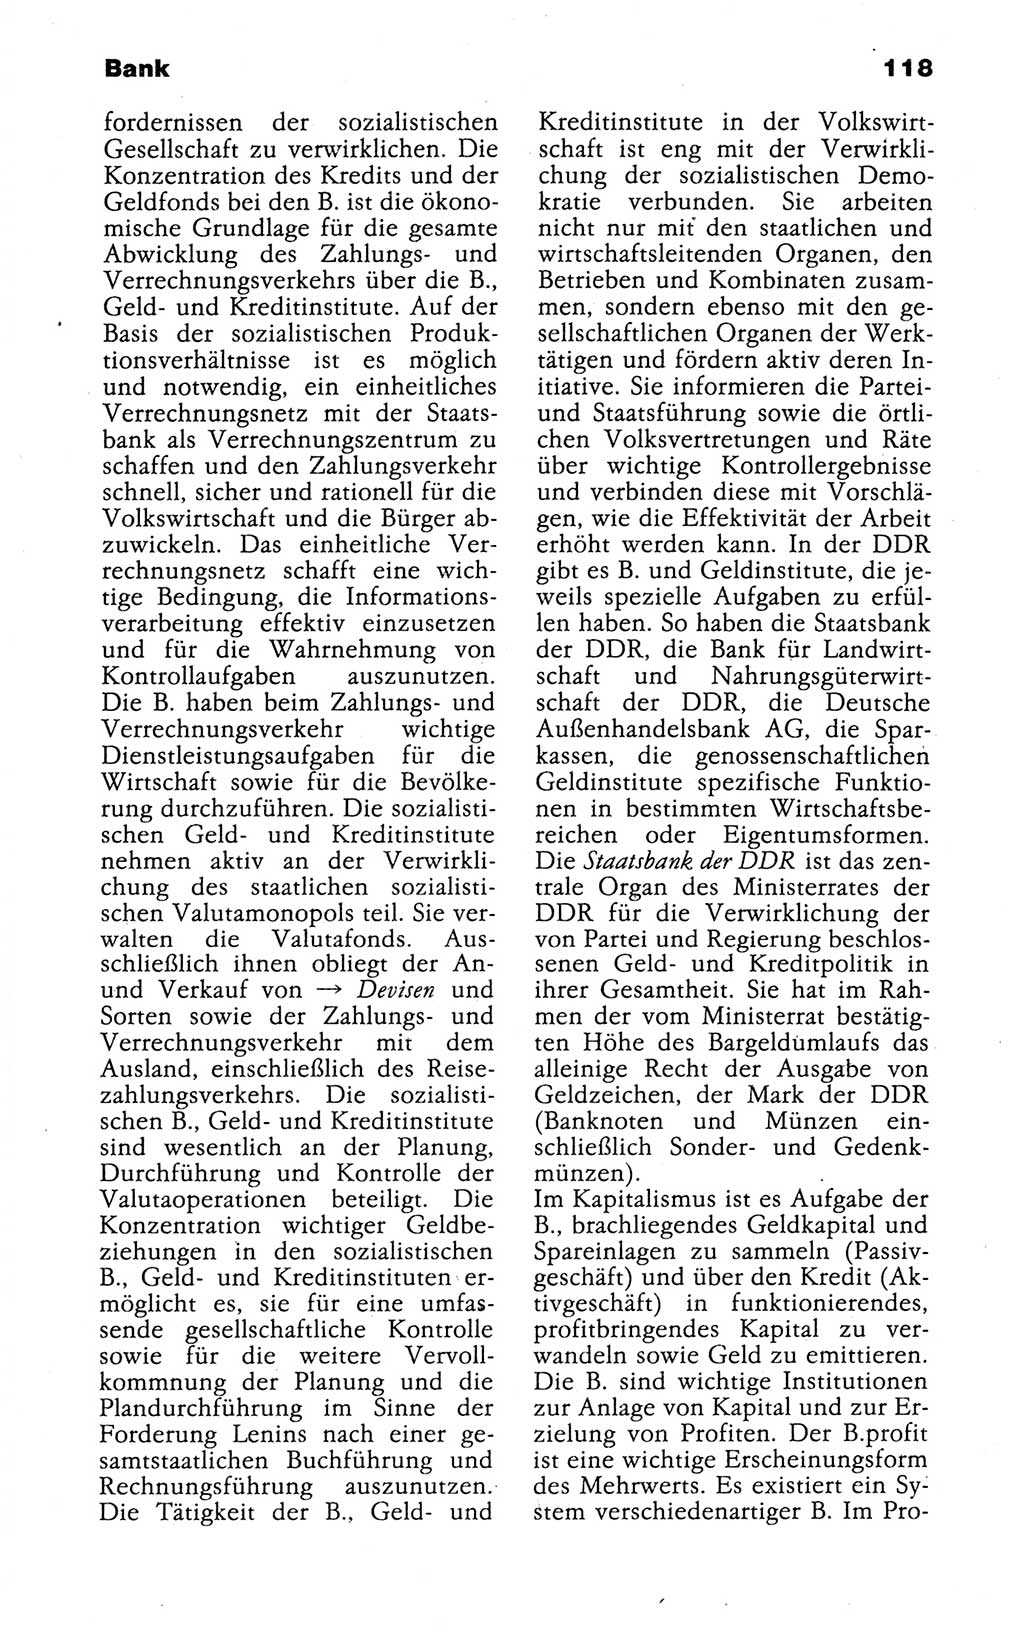 Kleines politisches Wörterbuch [Deutsche Demokratische Republik (DDR)] 1988, Seite 118 (Kl. pol. Wb. DDR 1988, S. 118)